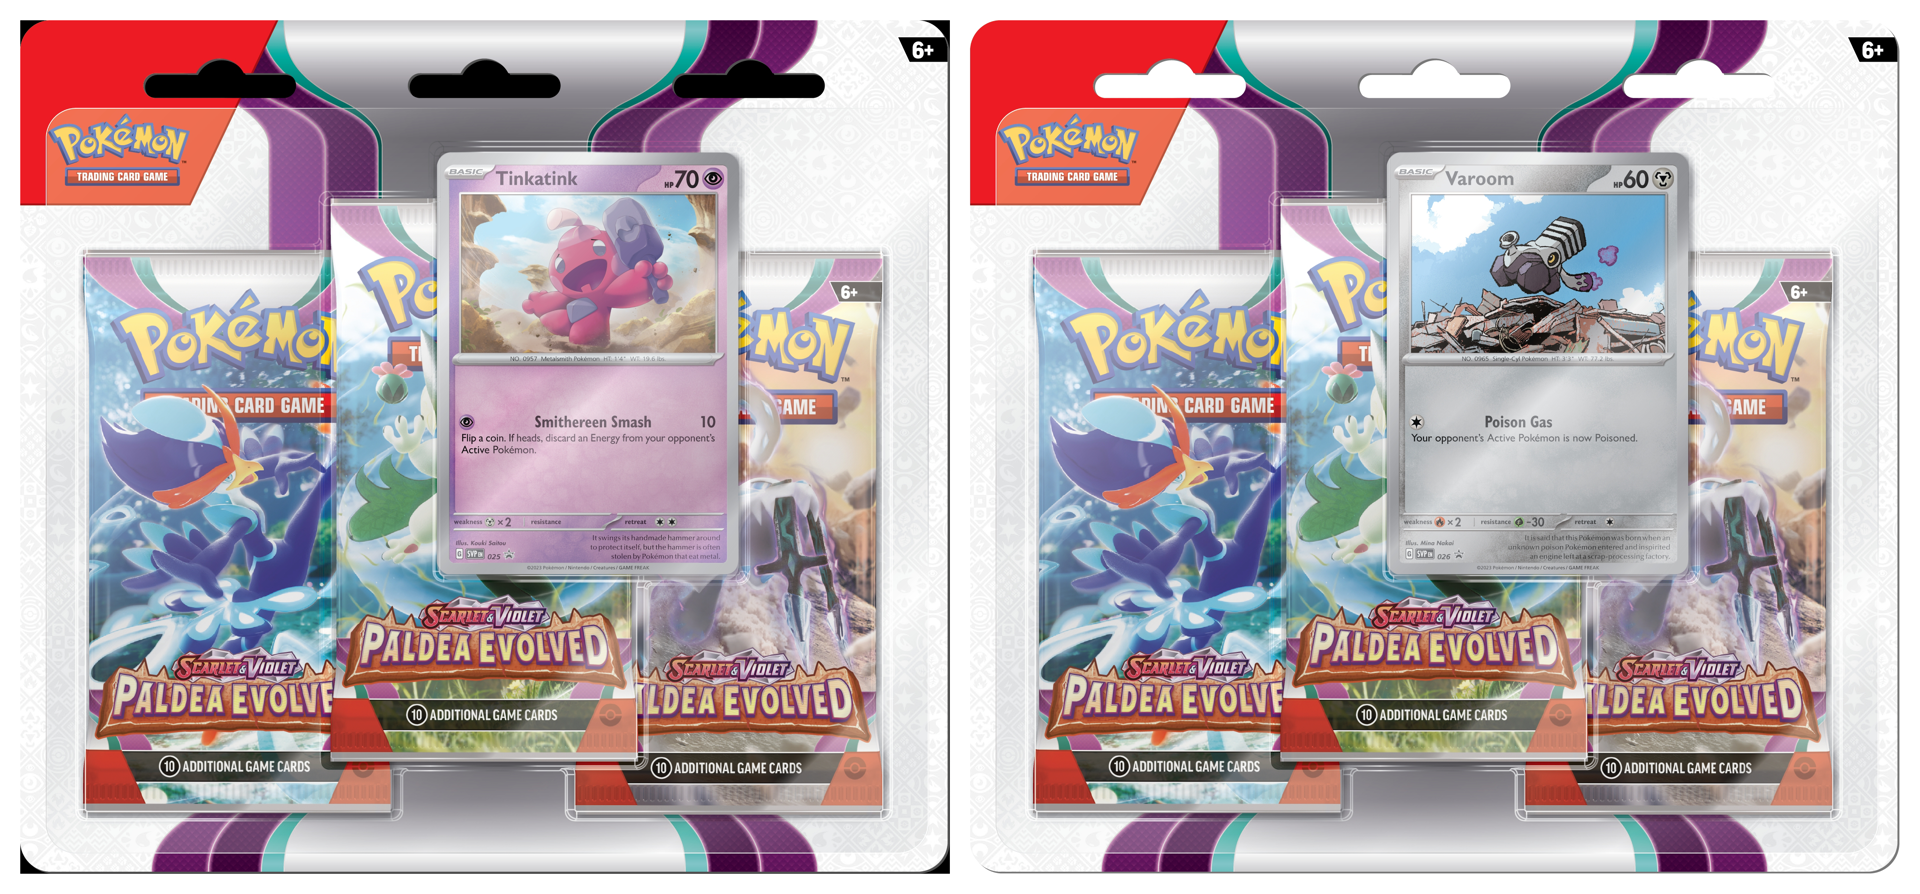 Pokémon JCC - Écarlate et Violet - Pack Blister de 3 Boosters Évolutions à Paldea Forgerette et Vrombi (1 Blister aléatoire)